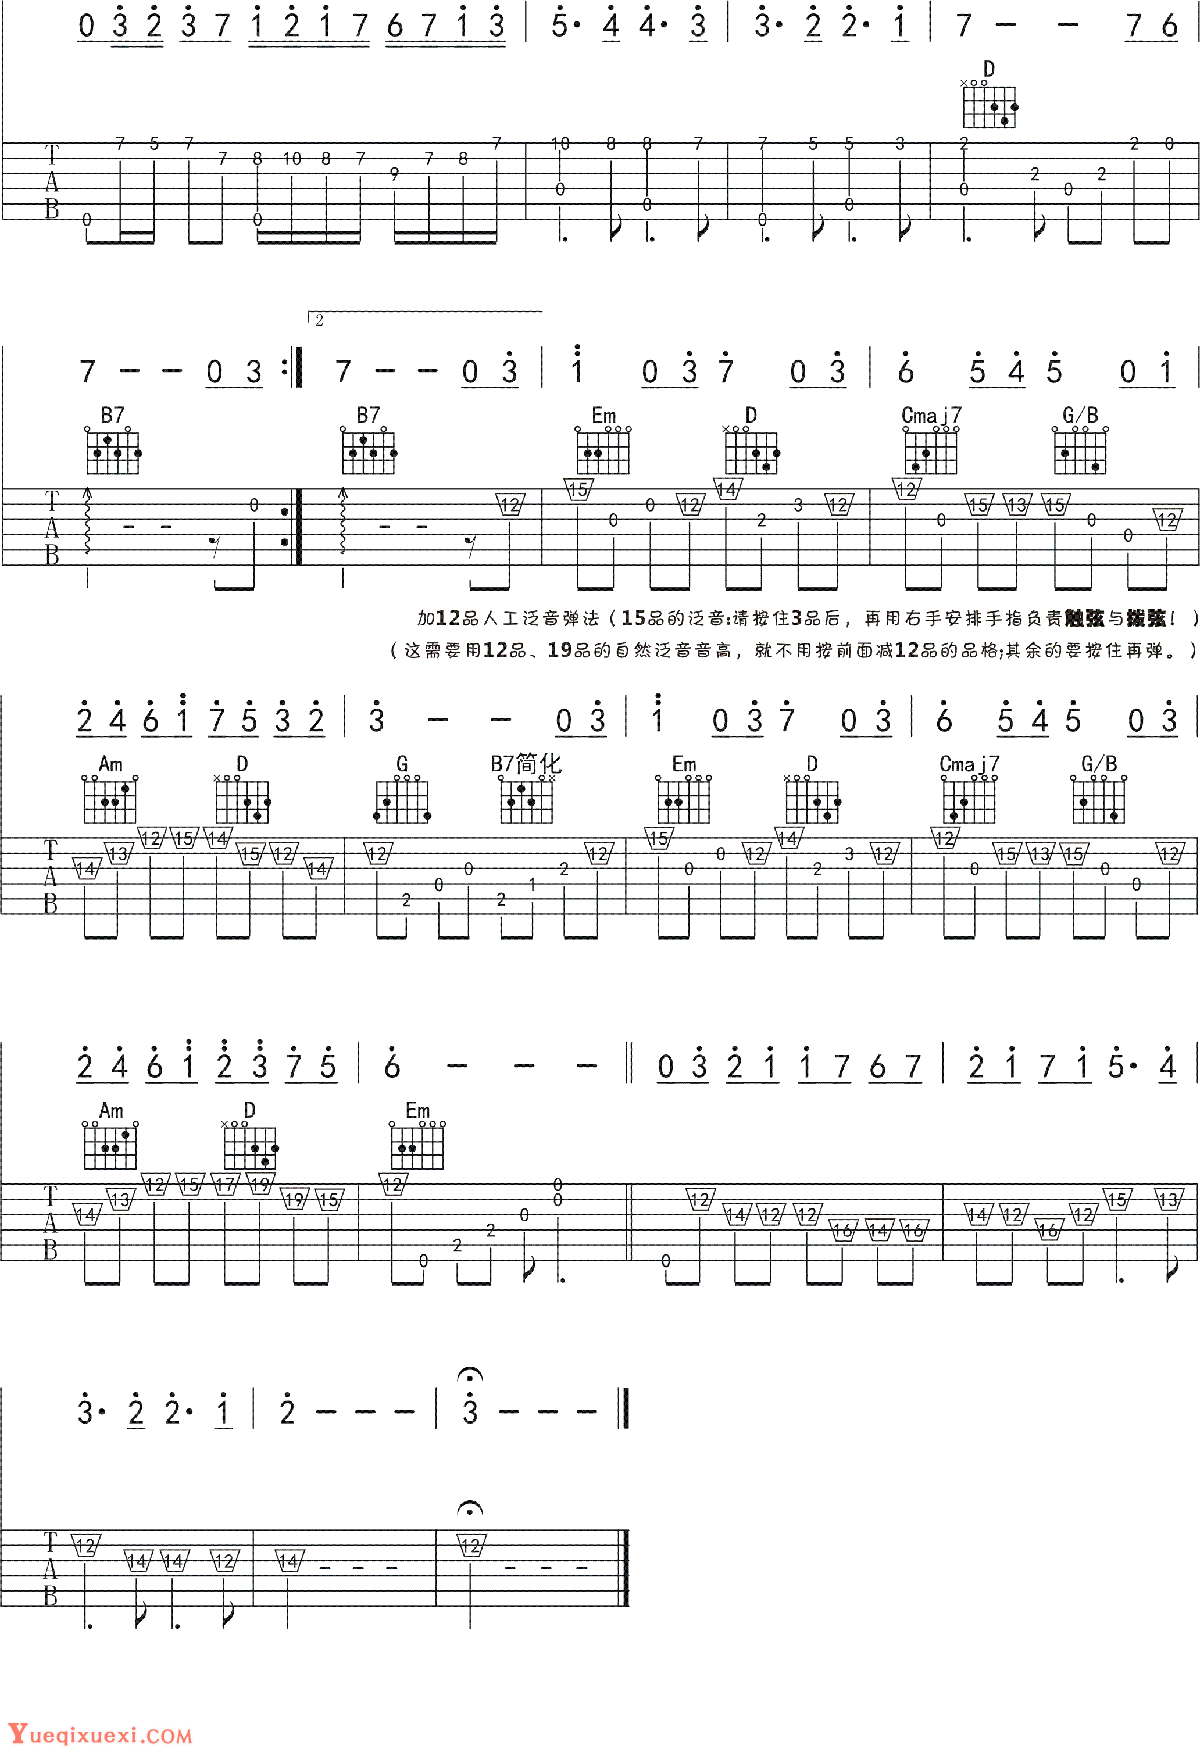 曲谱《风之丘》吉他谱C调简单版 - 和弦编配简化版 - 三月芦苇六线谱 - 吉他简谱